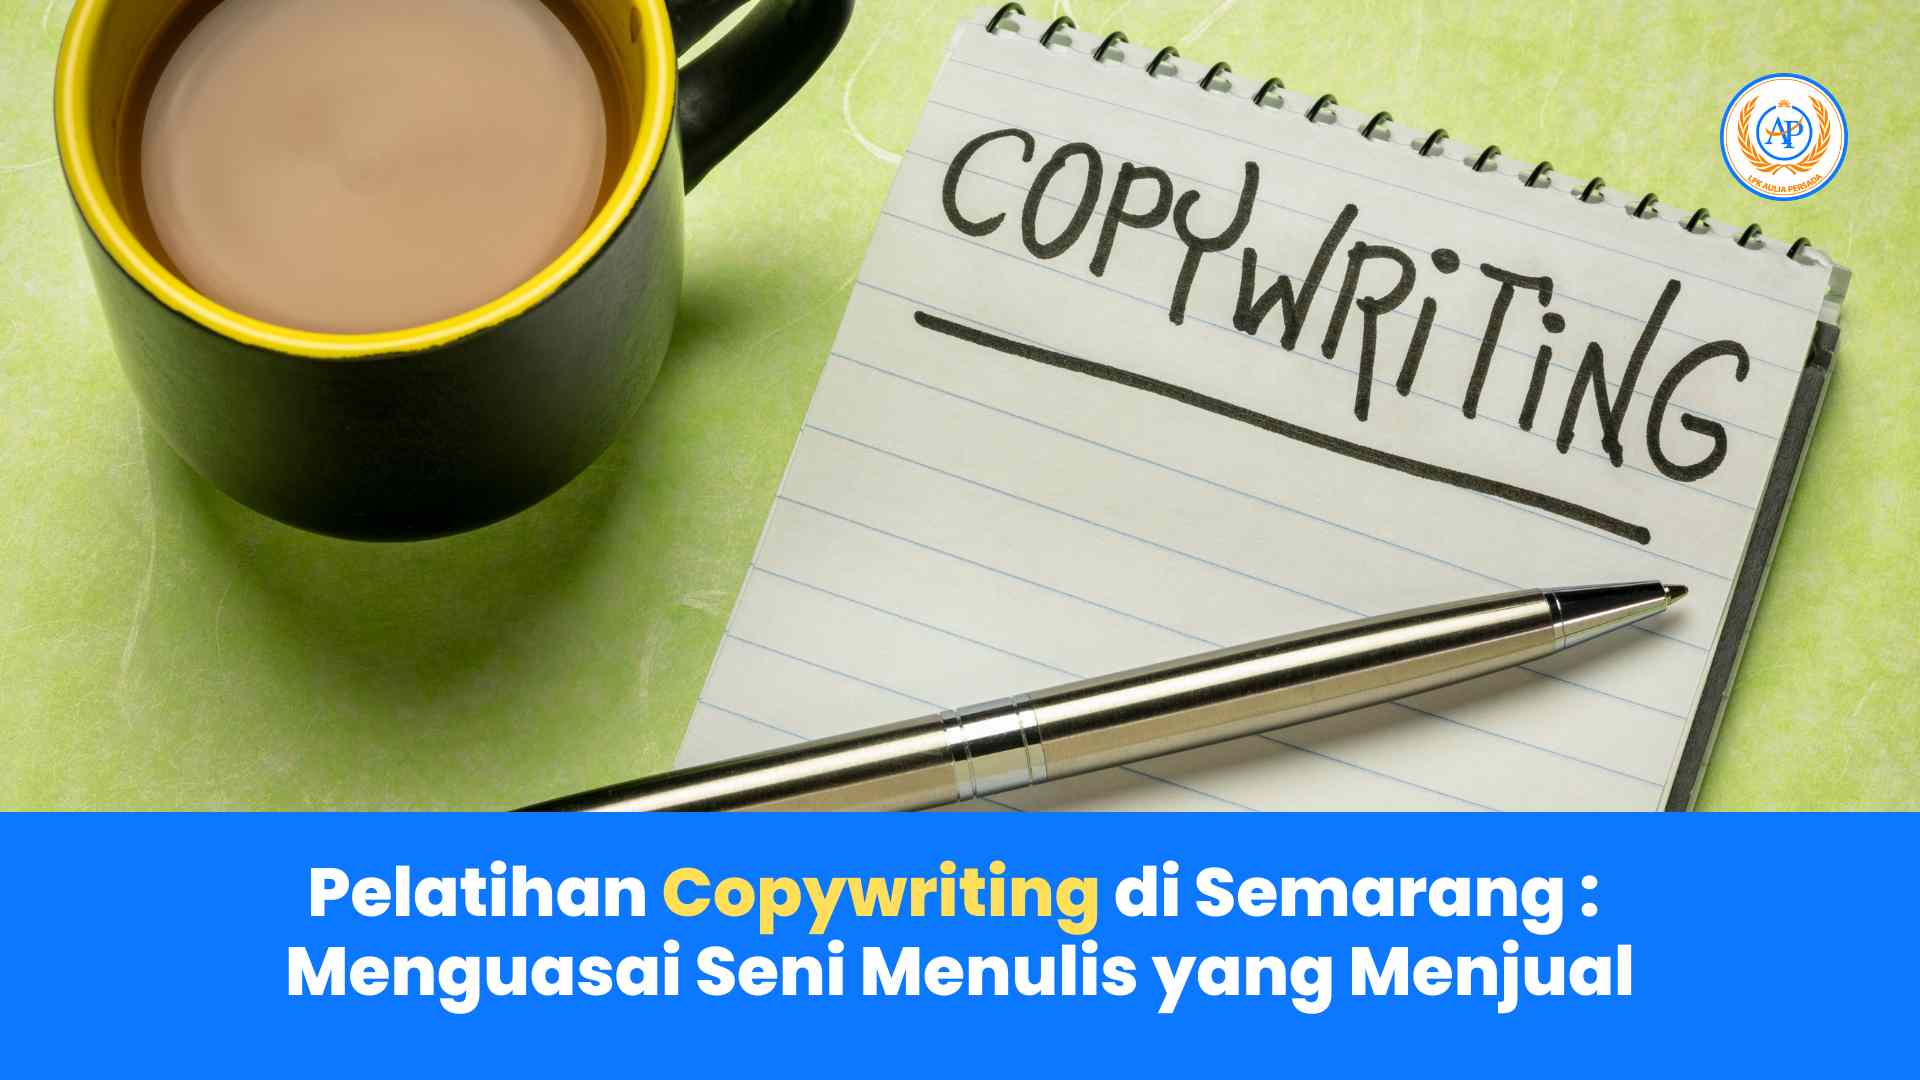 Pelatihan Copywriting di Semarang: Menguasai Seni Menulis yang Menjual